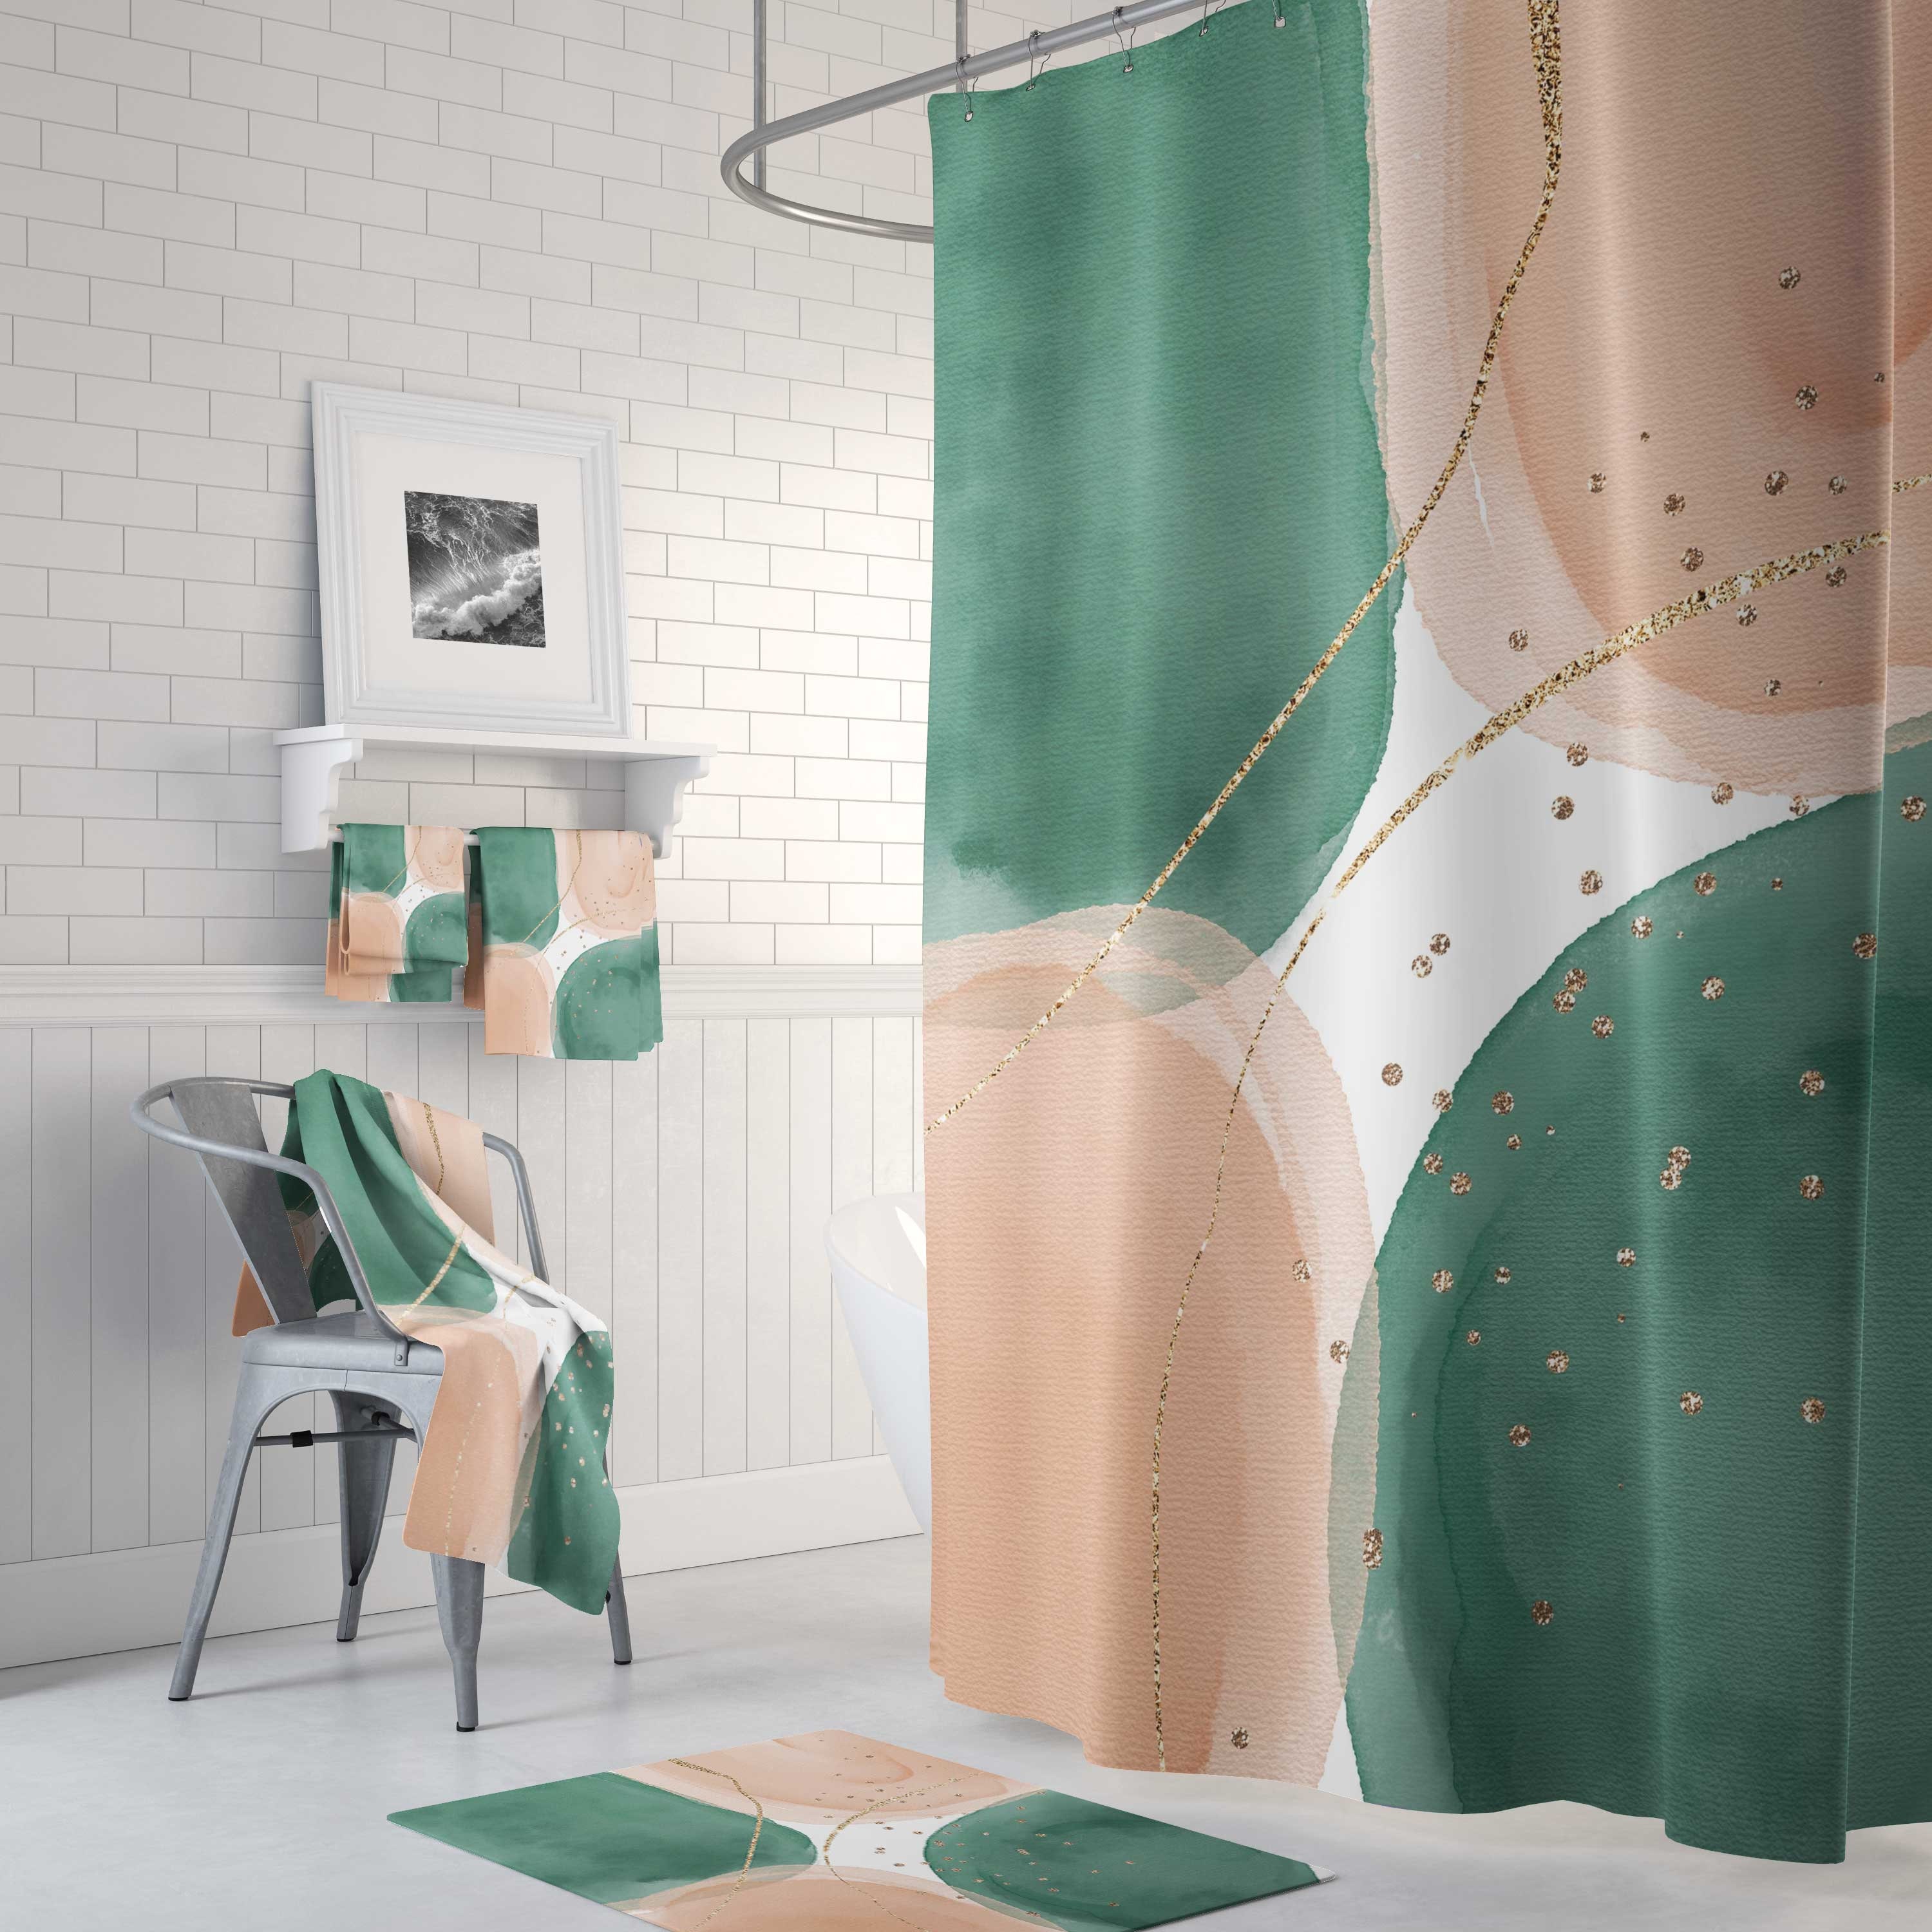 Louis vuitton lv bathroom set luxury shower curtain bath rug mat home decor